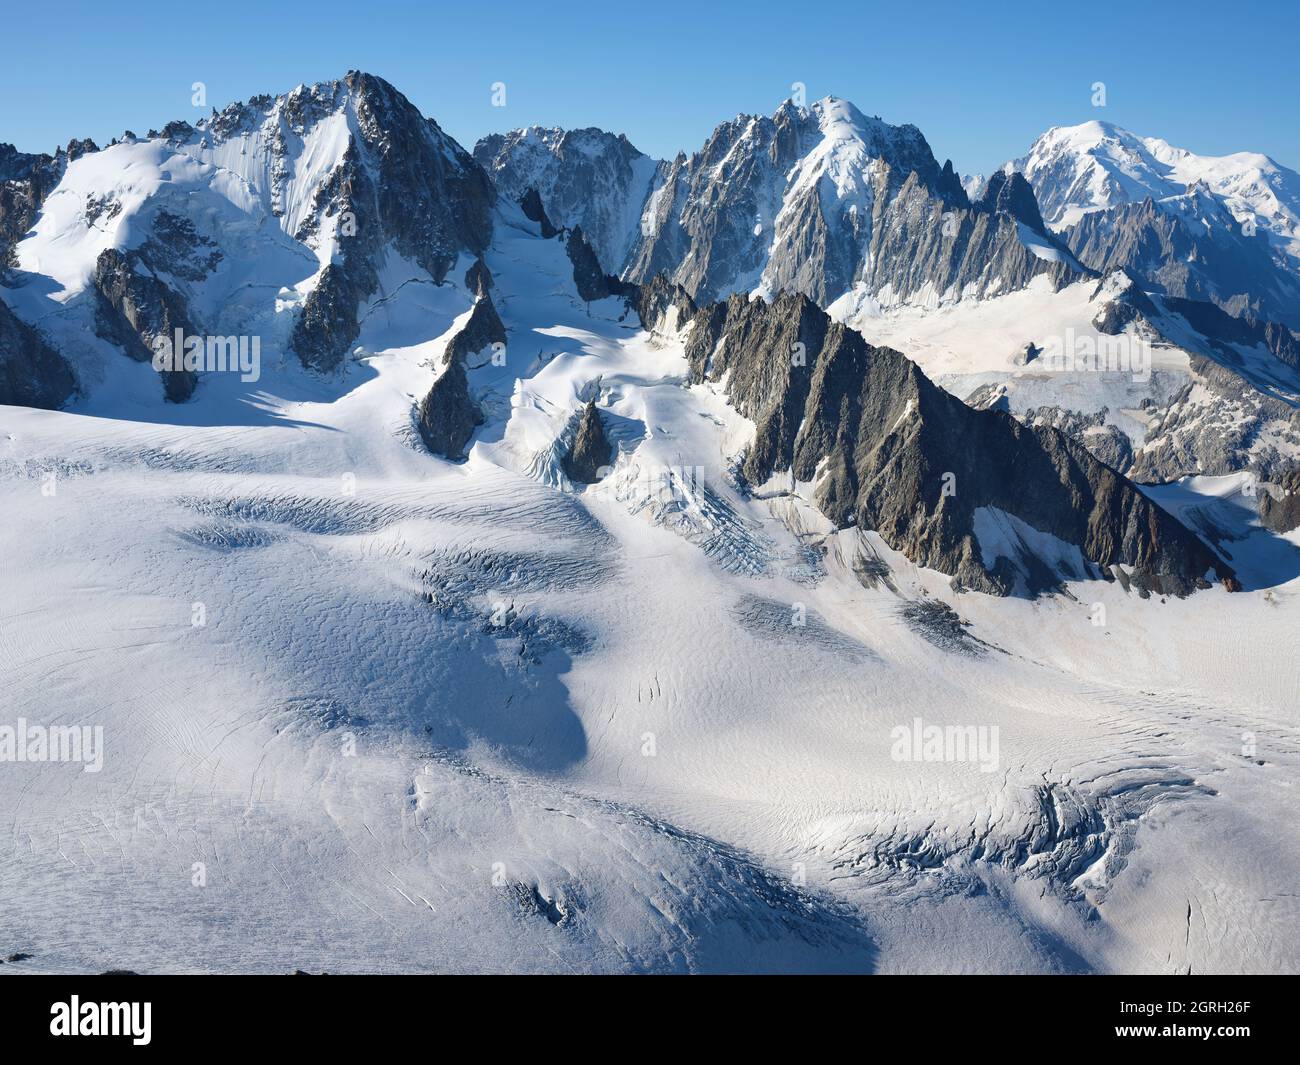 AERIAL VIEW. Left to right; Aiguille du Chardonnet (3824m), Aiguille Verte  (4122m), Mont Blanc (4807m). Chamonix, Haute-Savoie, France Stock Photo -  Alamy